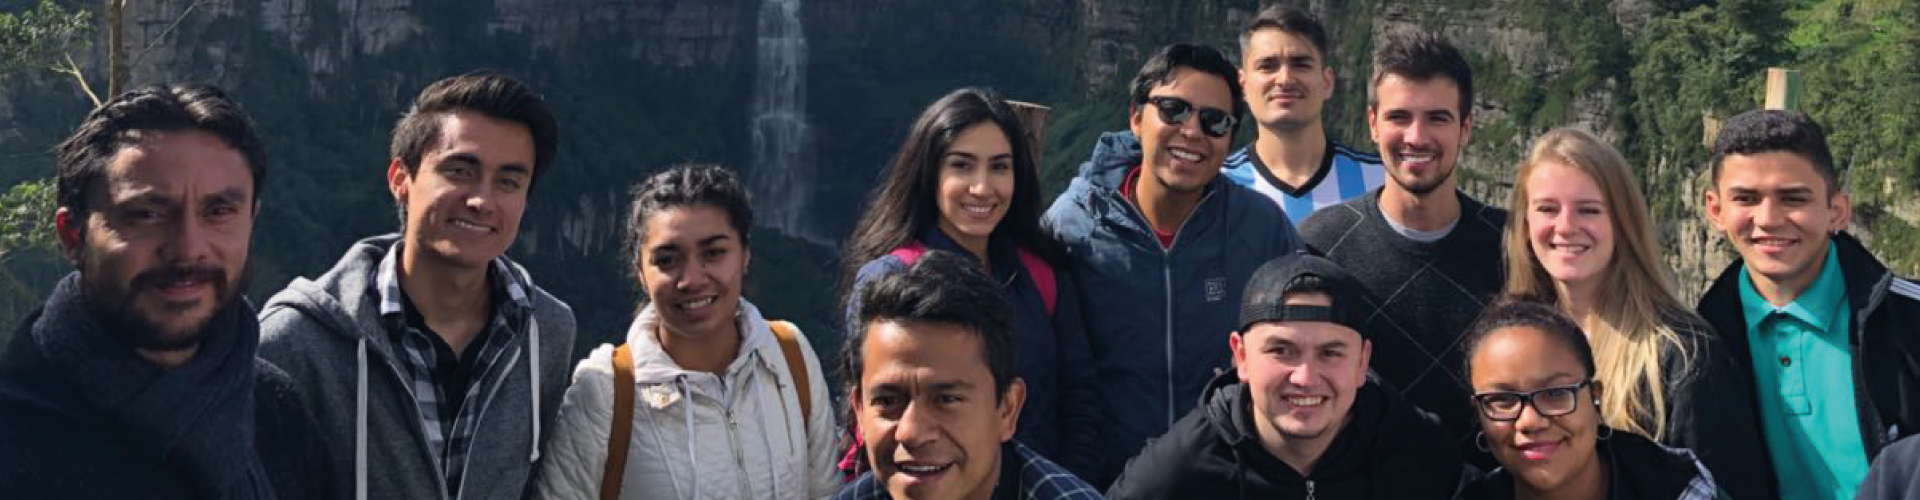 Estudiantes internacionales realizando intercambio académico en UNIMINUTO - Colombia 